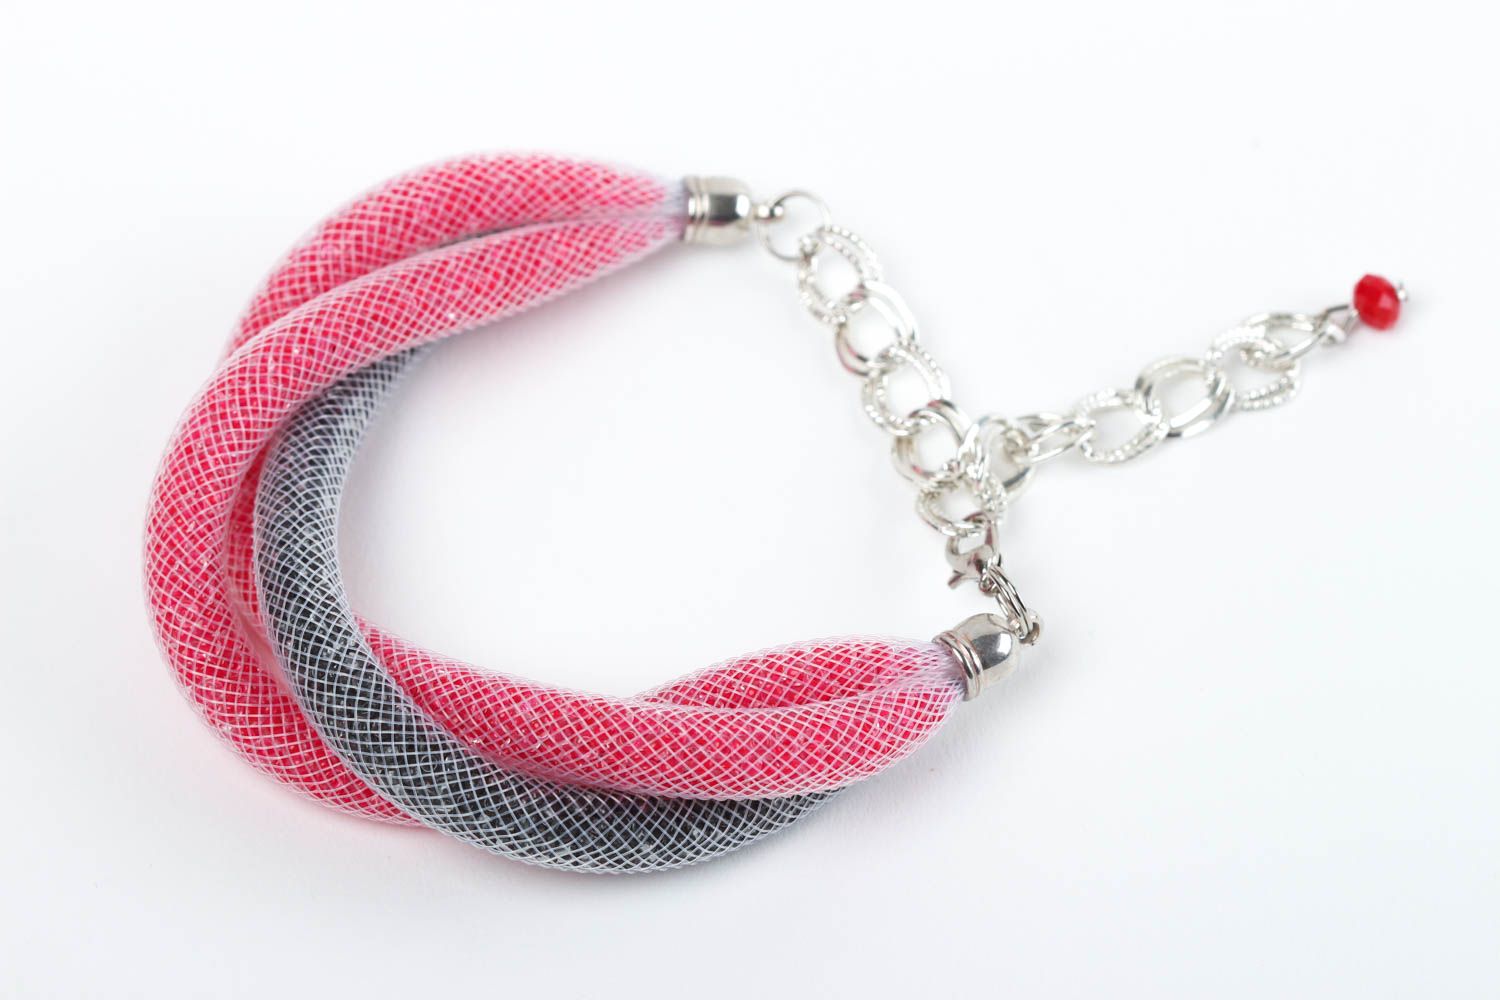 Handmade bracelet designer bracelet beads accessory unusual gift handmade photo 2